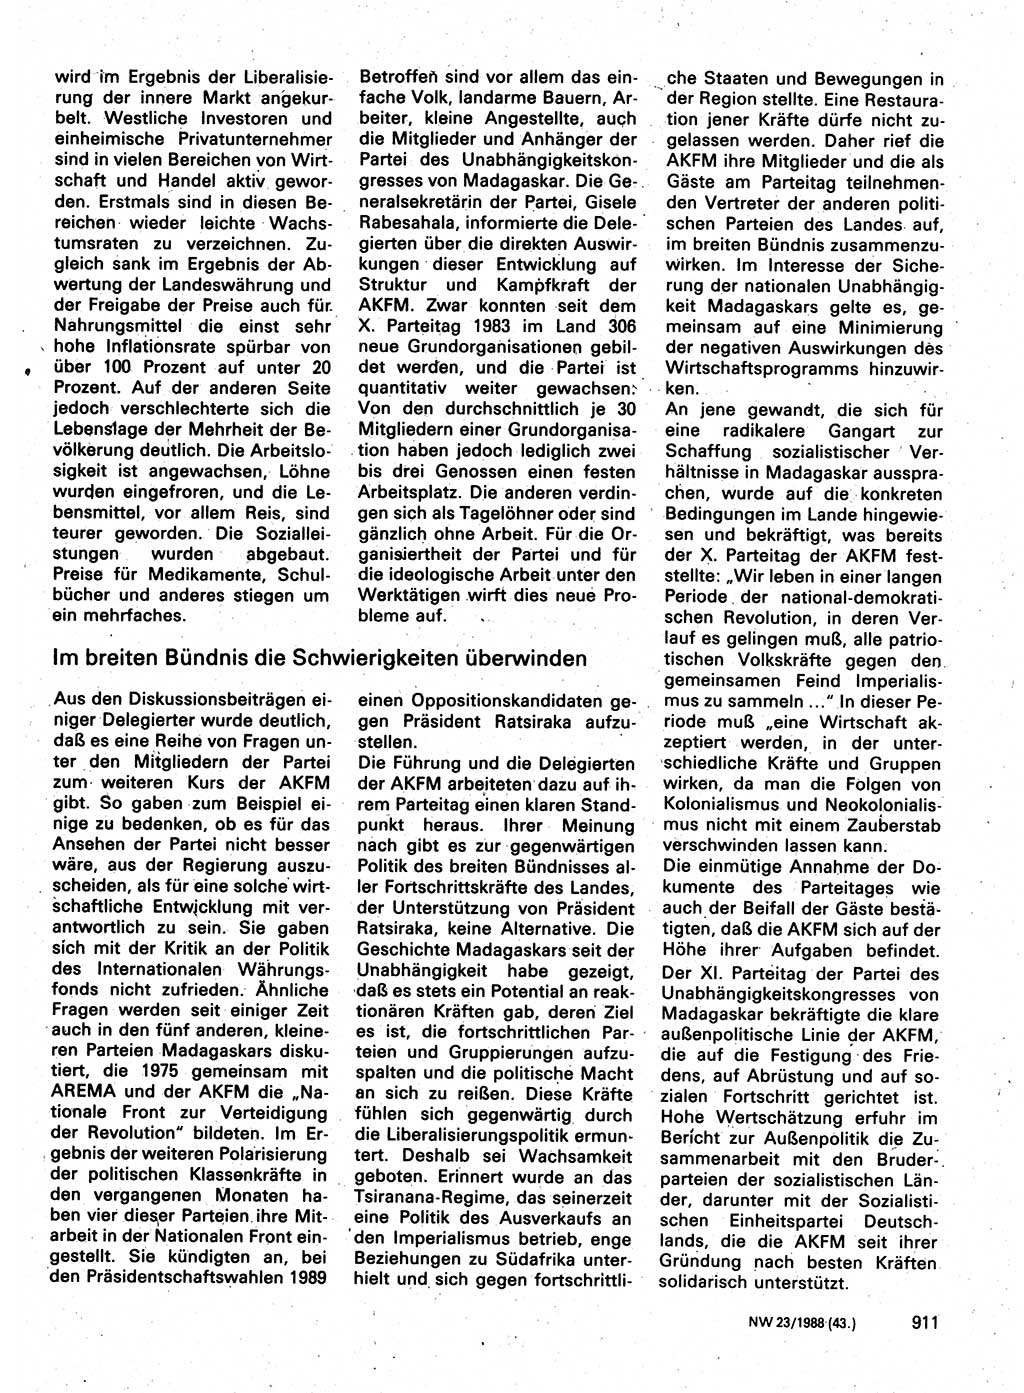 Neuer Weg (NW), Organ des Zentralkomitees (ZK) der SED (Sozialistische Einheitspartei Deutschlands) für Fragen des Parteilebens, 43. Jahrgang [Deutsche Demokratische Republik (DDR)] 1988, Seite 911 (NW ZK SED DDR 1988, S. 911)